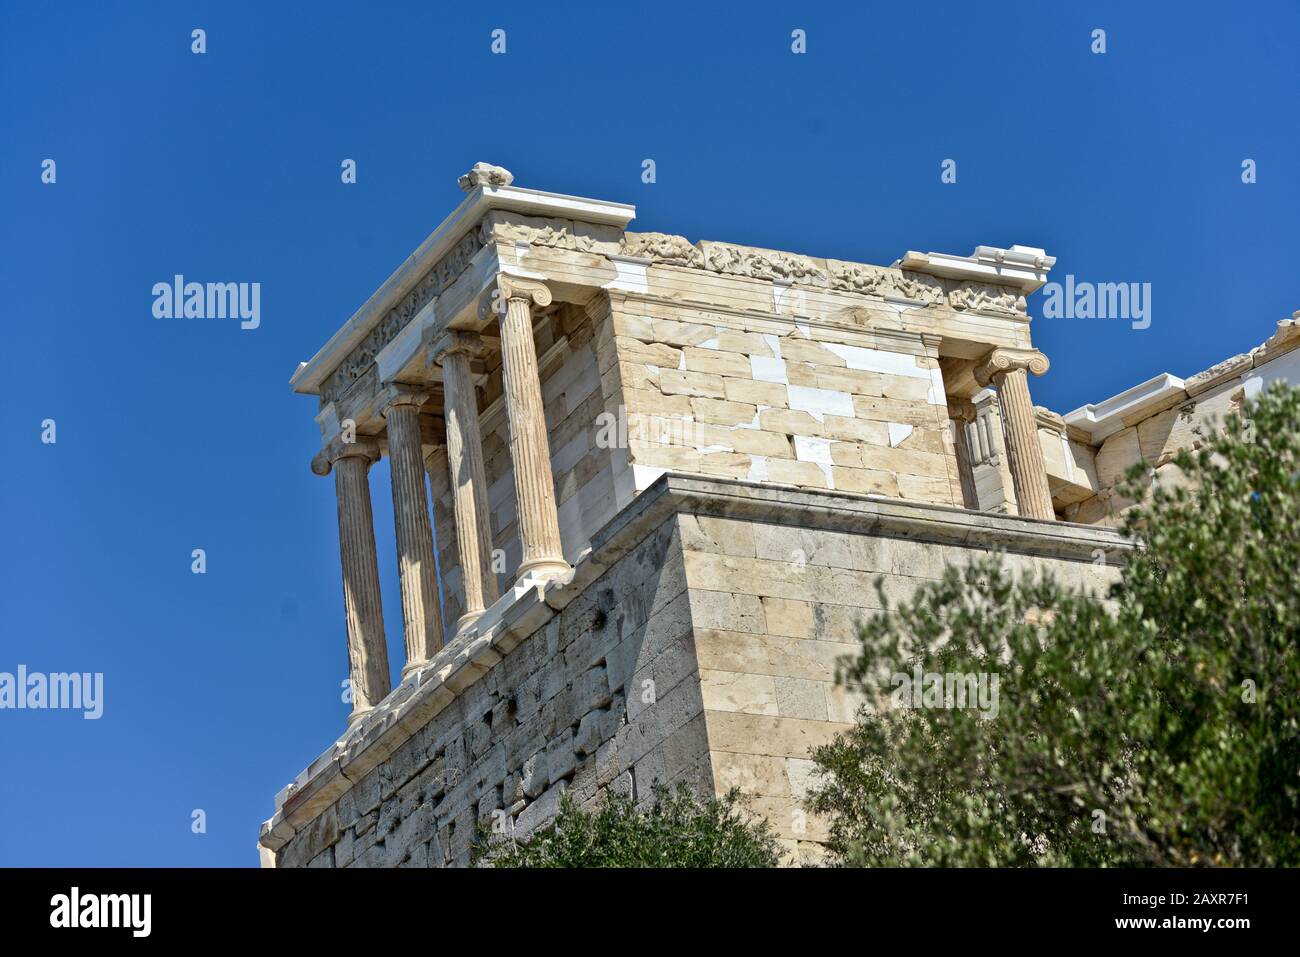 Temple of Athena Nike. Acropolis of Athens, Greece Stock Photo - Alamy